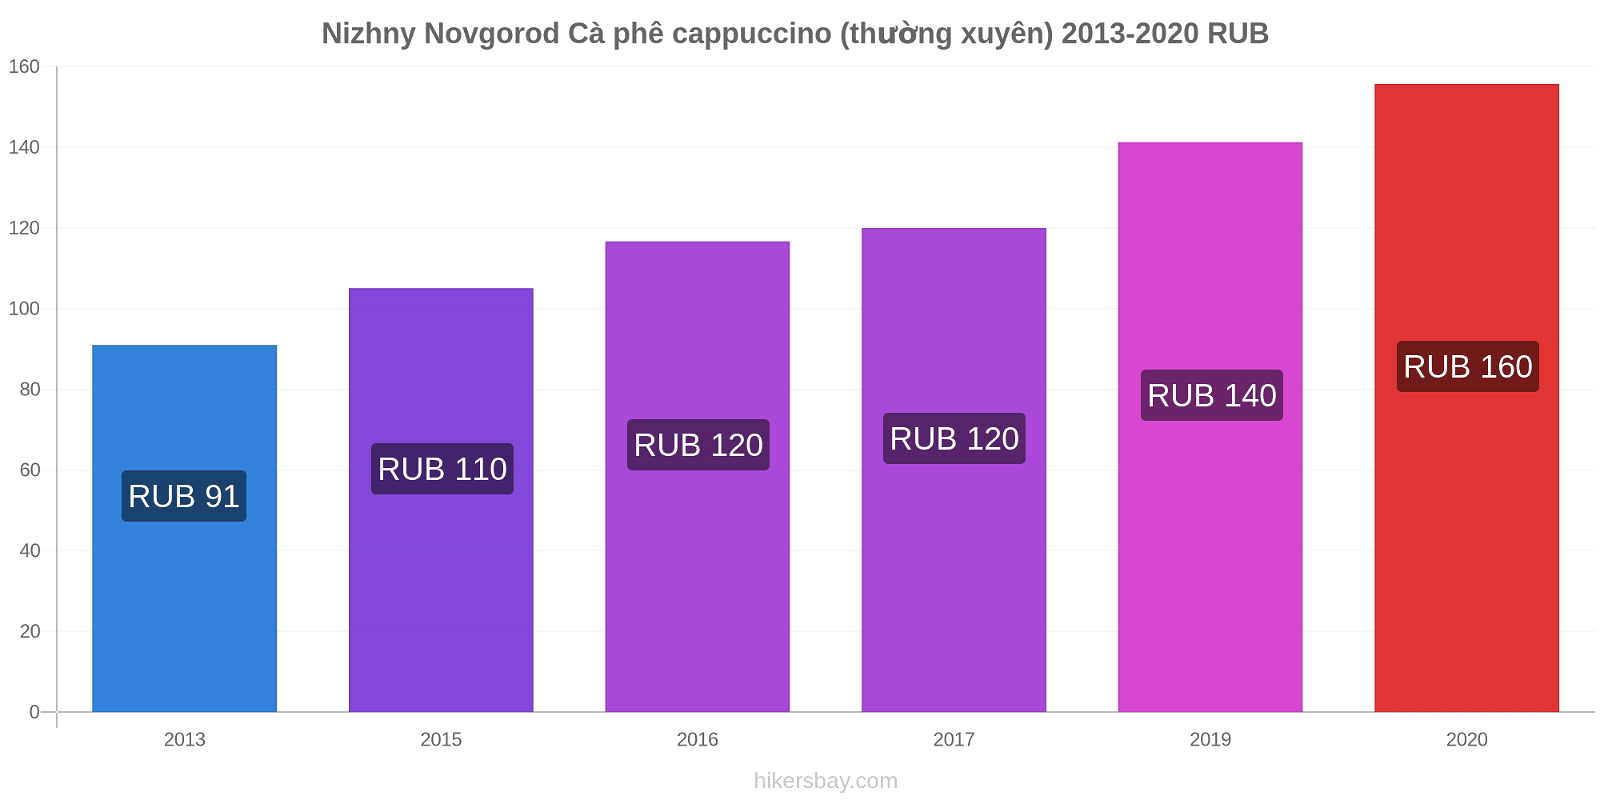 Nizhny Novgorod thay đổi giá Cà phê cappuccino (thường xuyên) hikersbay.com